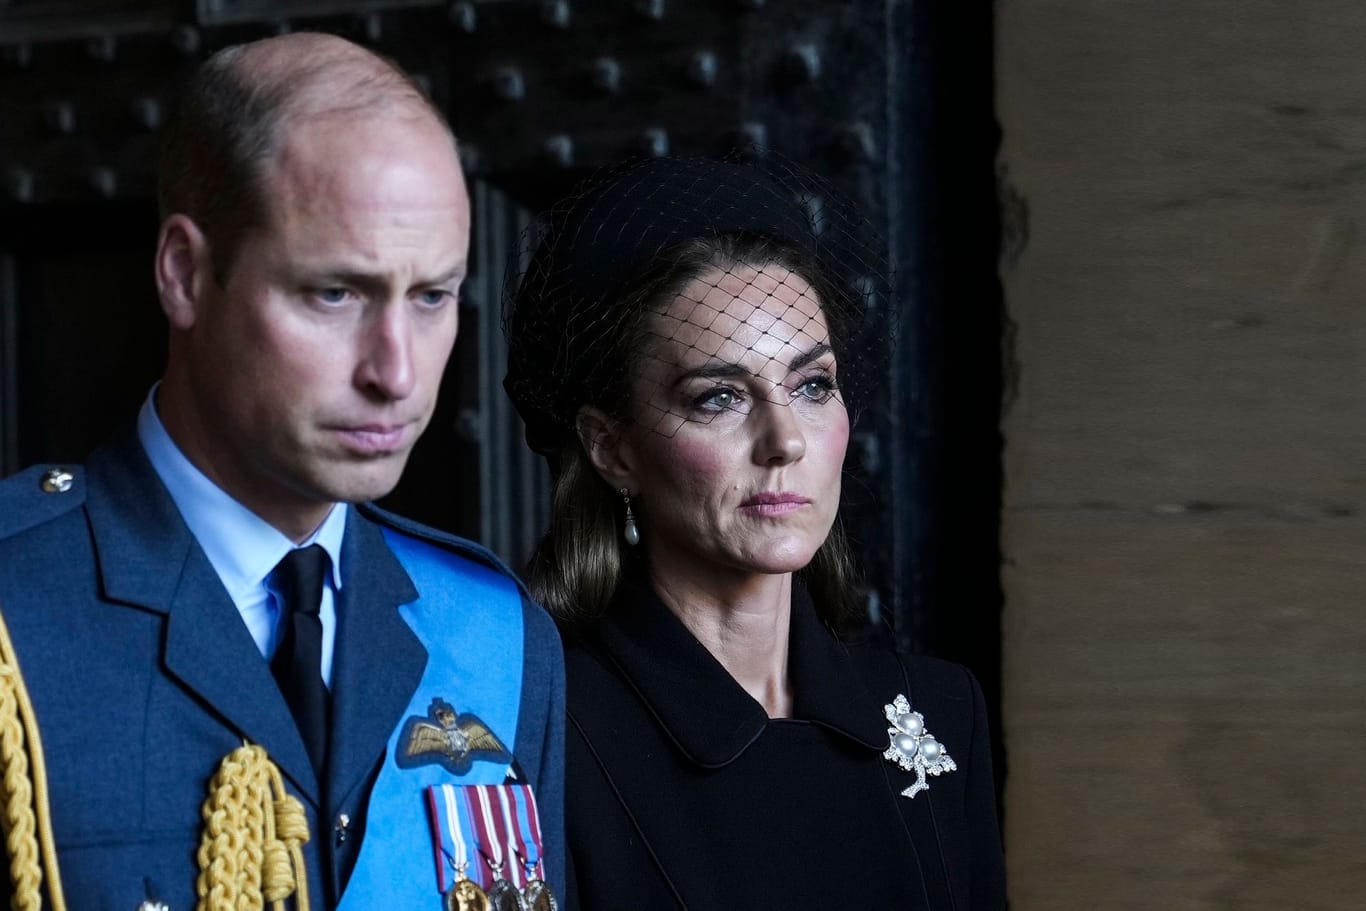 Prinz William und Prinzessin Kate: Sie äußern sich zu den schrecklichen Ereignissen in Sydney.